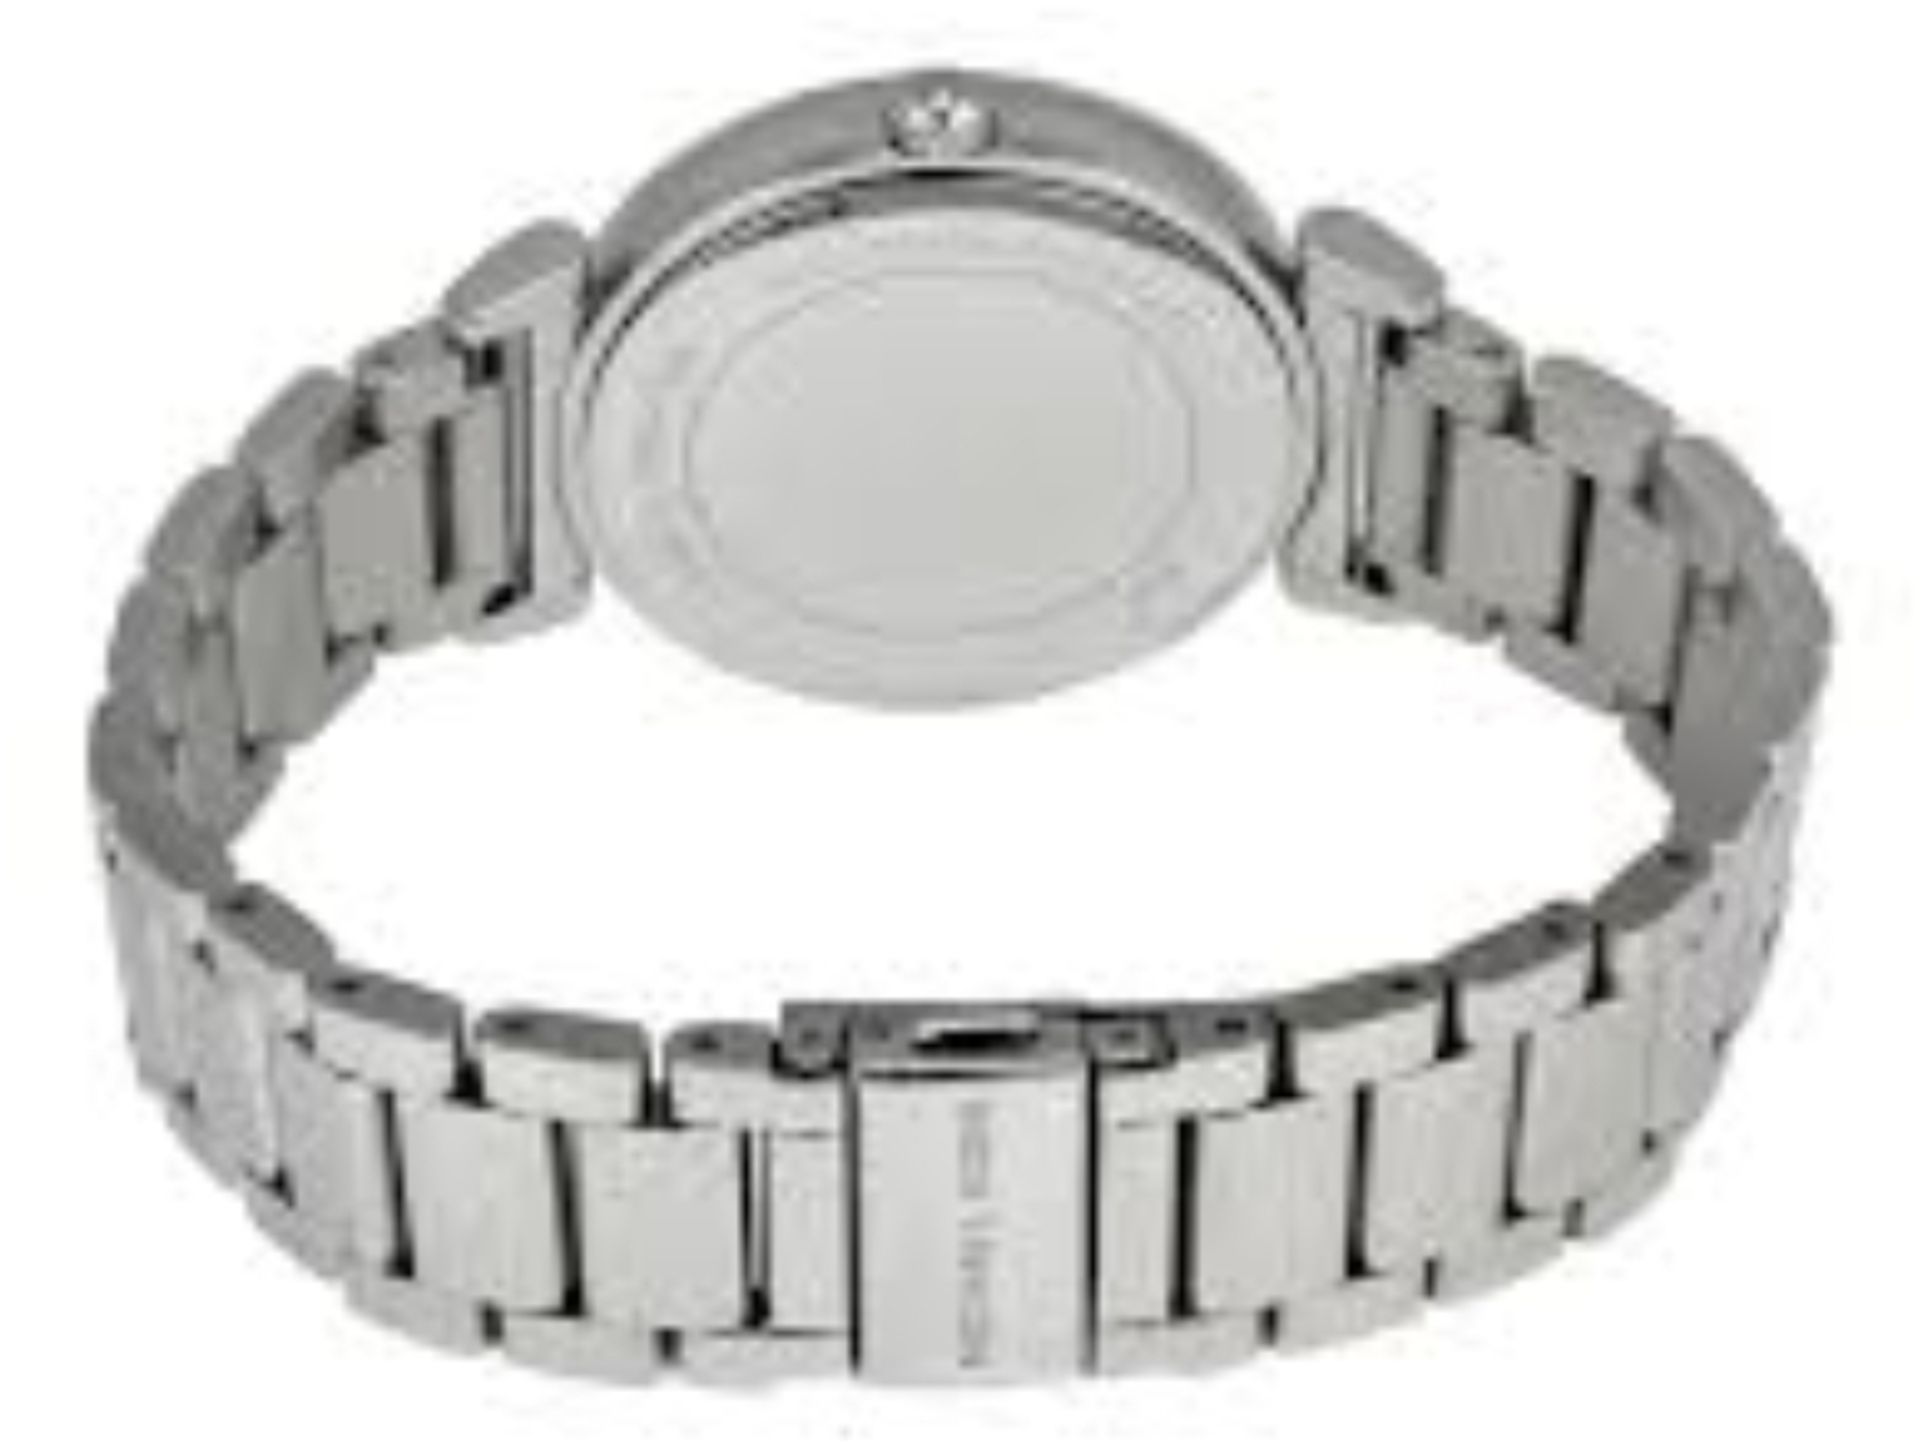 Michael Kors MK3355 Ladies Catlin Bracelet Silver Watch - Image 4 of 8